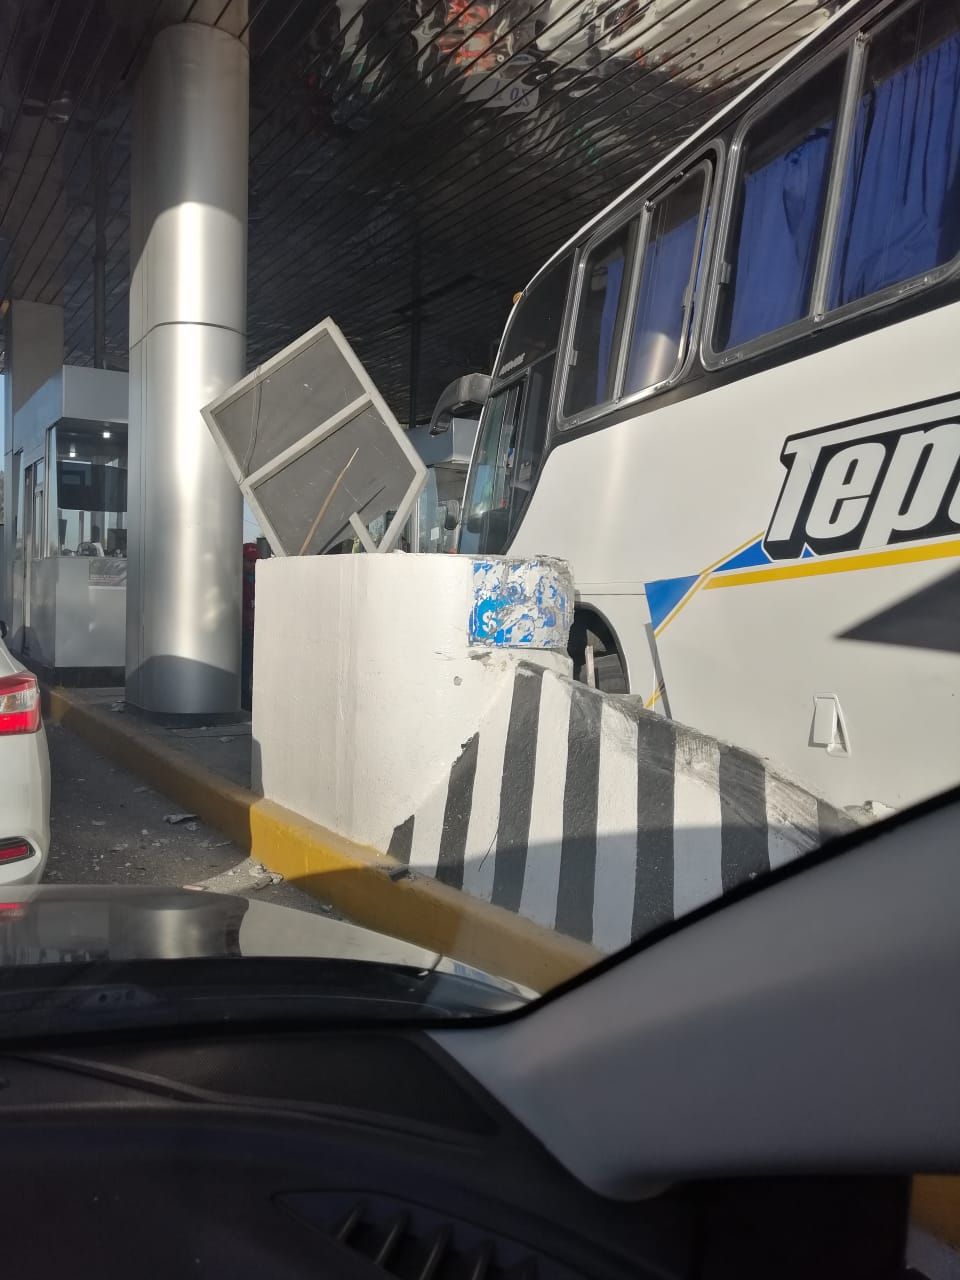 Autobús de la línea Tepetitlán se impacta contra una de las casetas de la autopista Peñón-Texcoco, hay 7 heridos